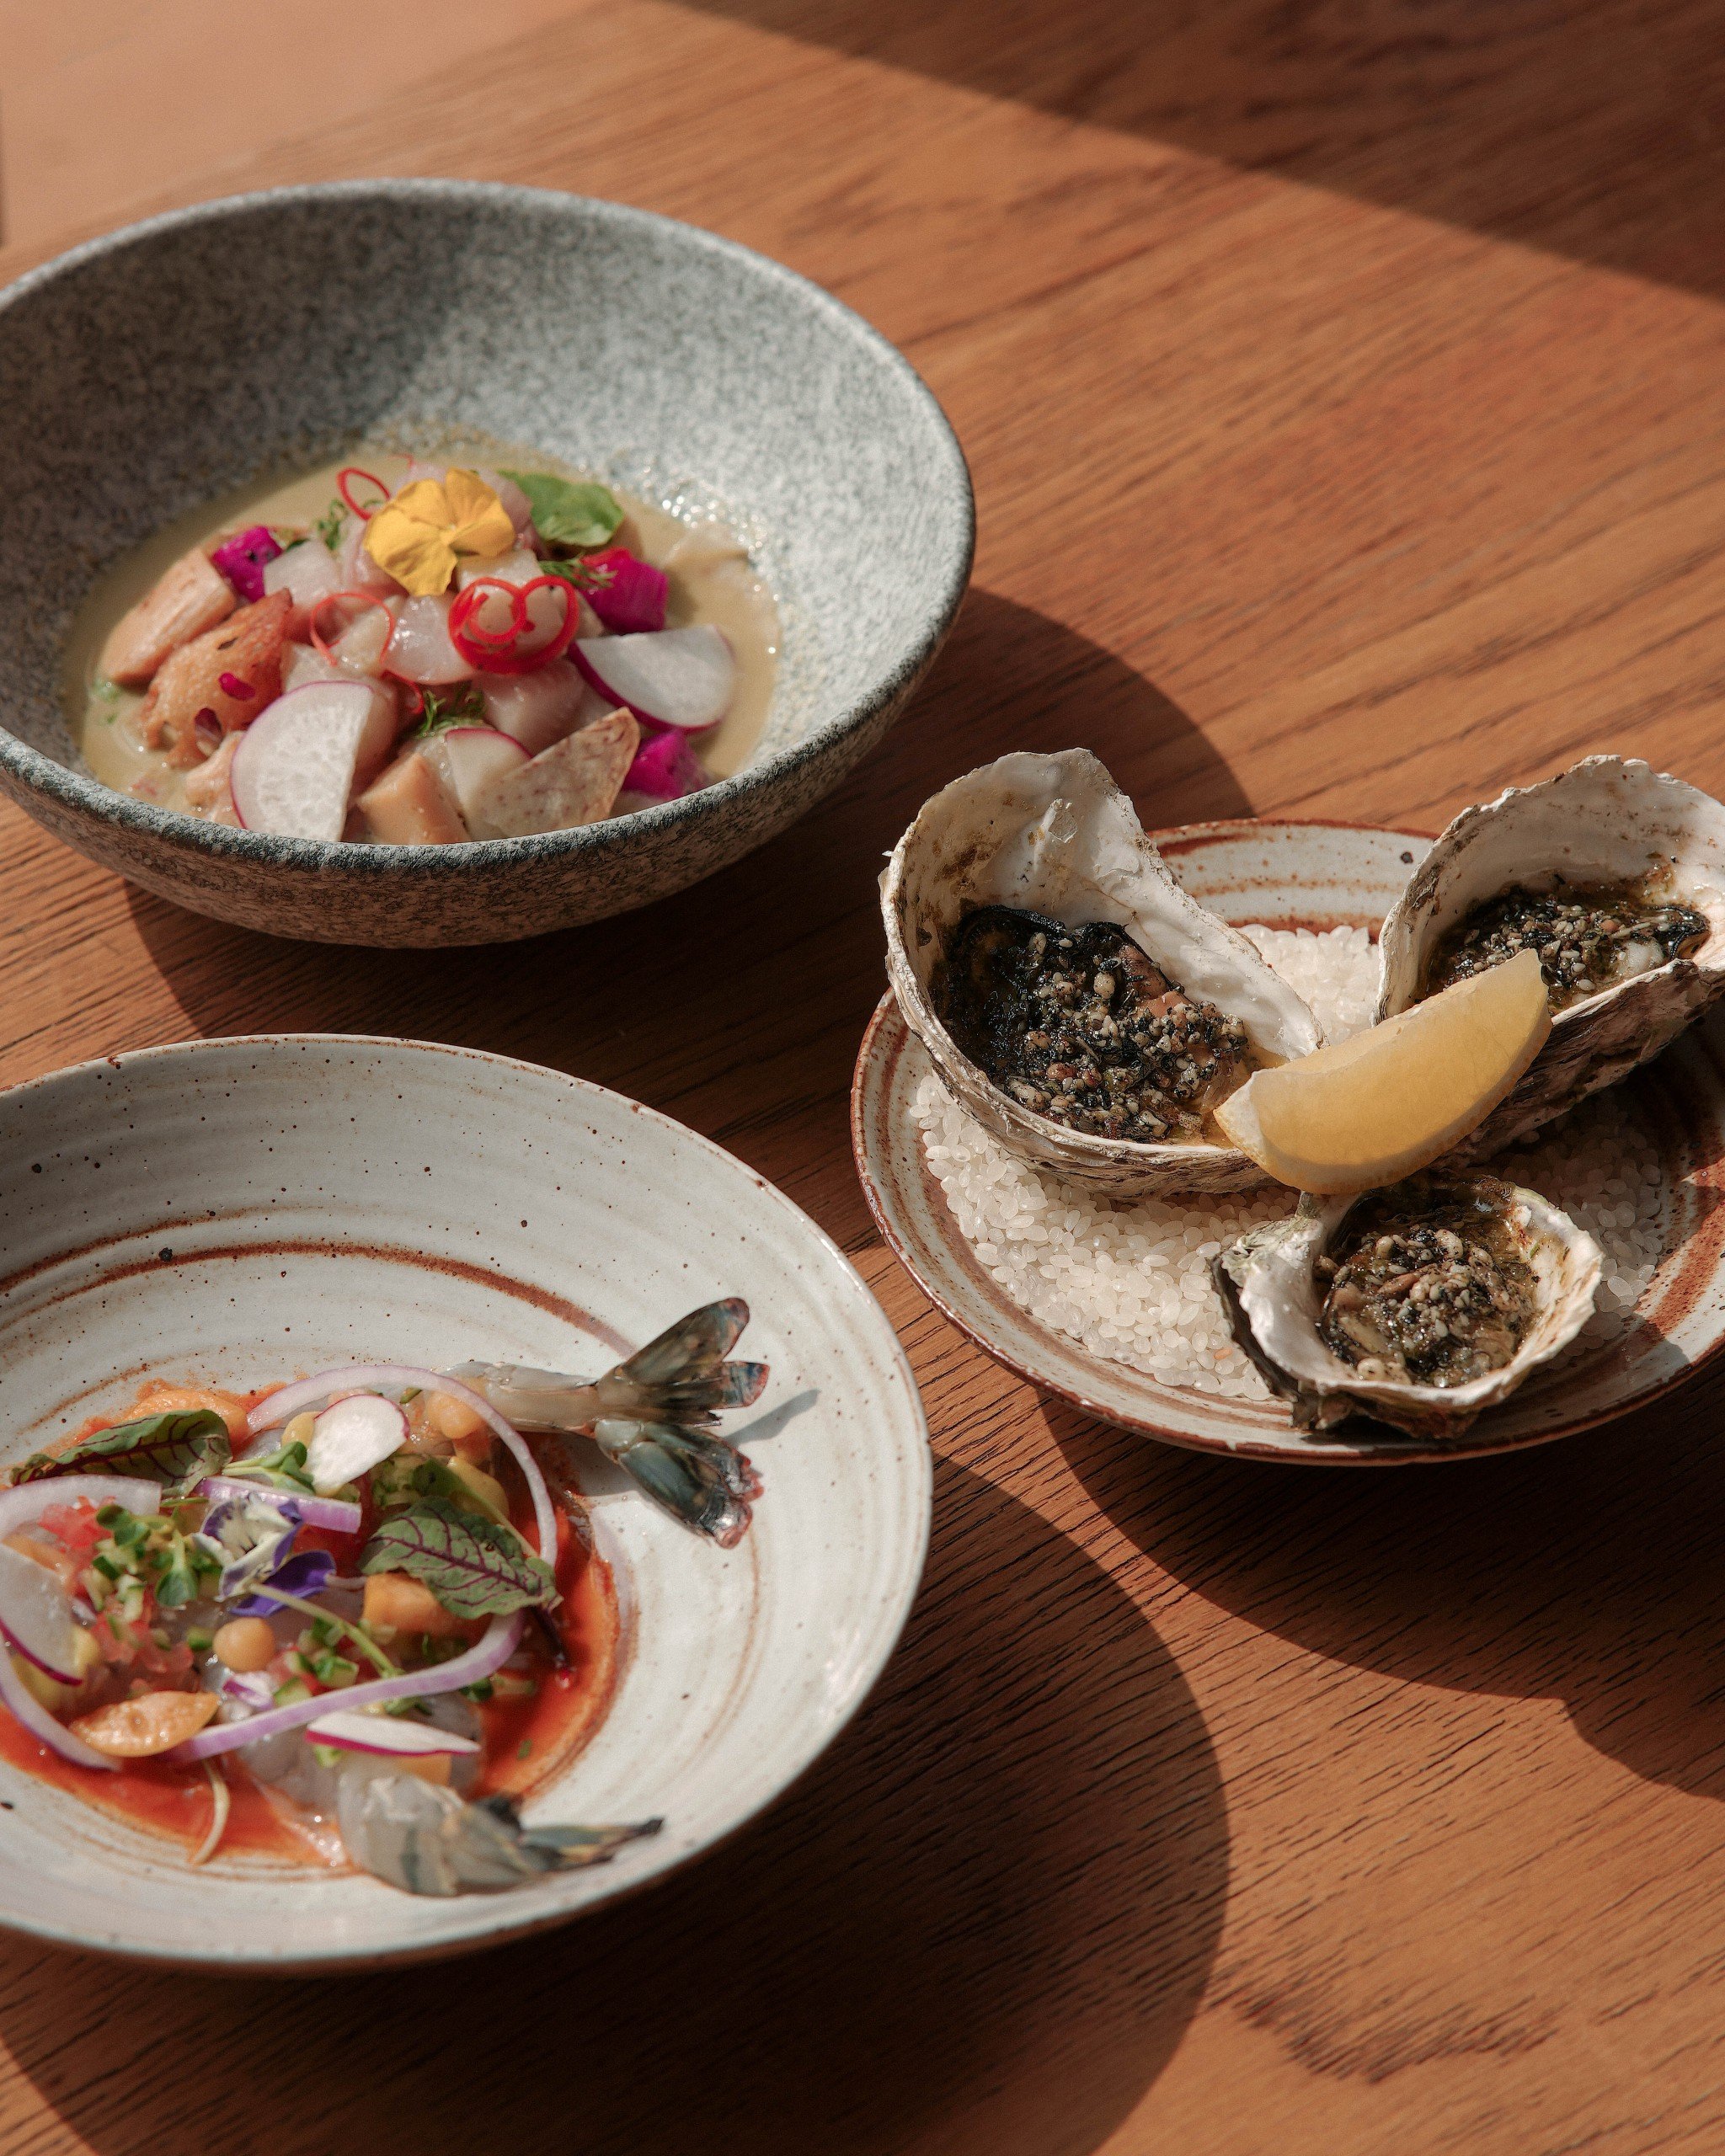 Nikkei là một cách gọi ẩm thực kết hợp giữa văn hóa Nhật Bản và Peru